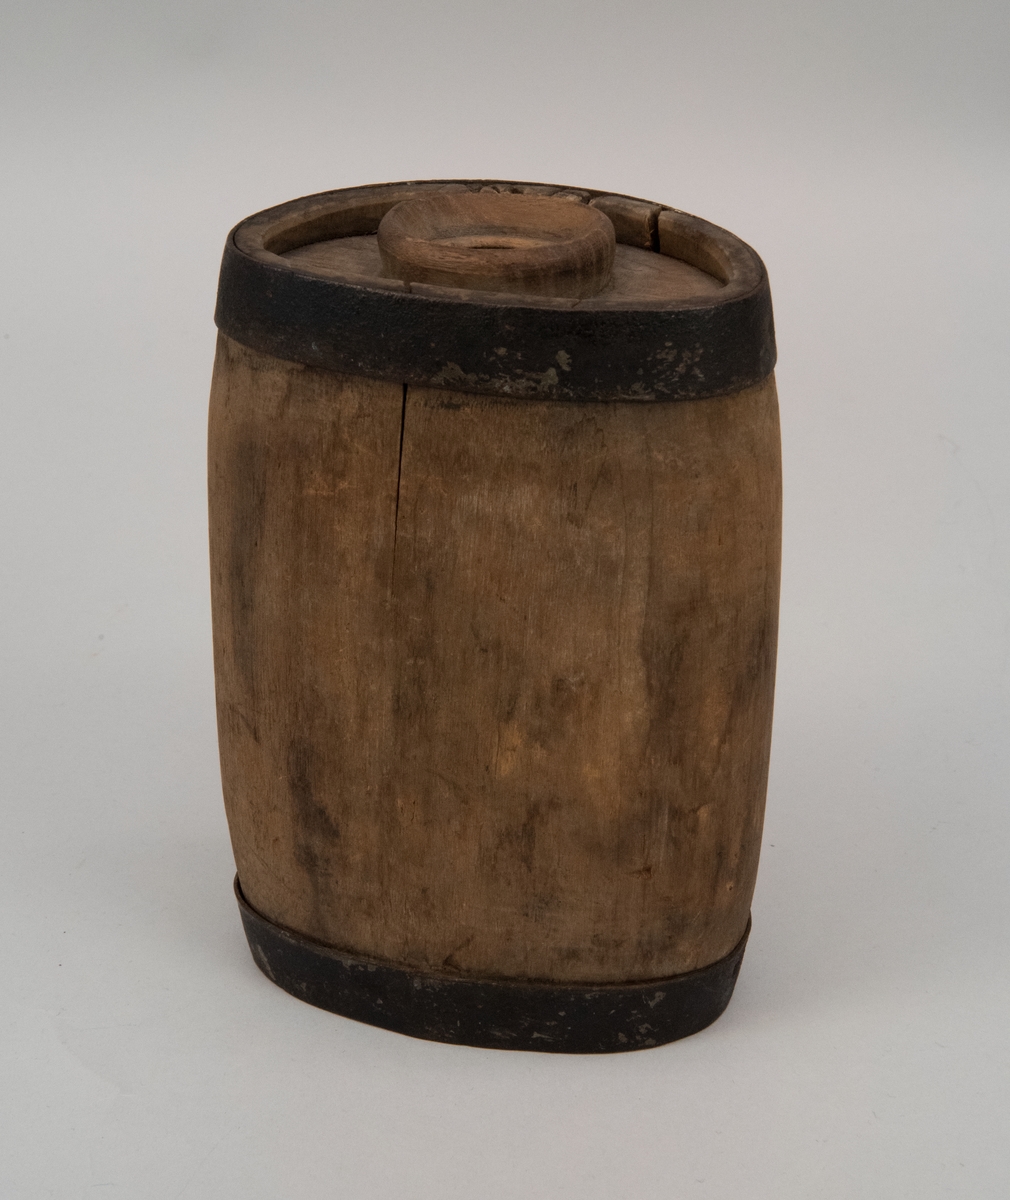 Drickvattenbehållare eller flaska, av gråbrunt trä med förstärkande metallband upptill och nertill.